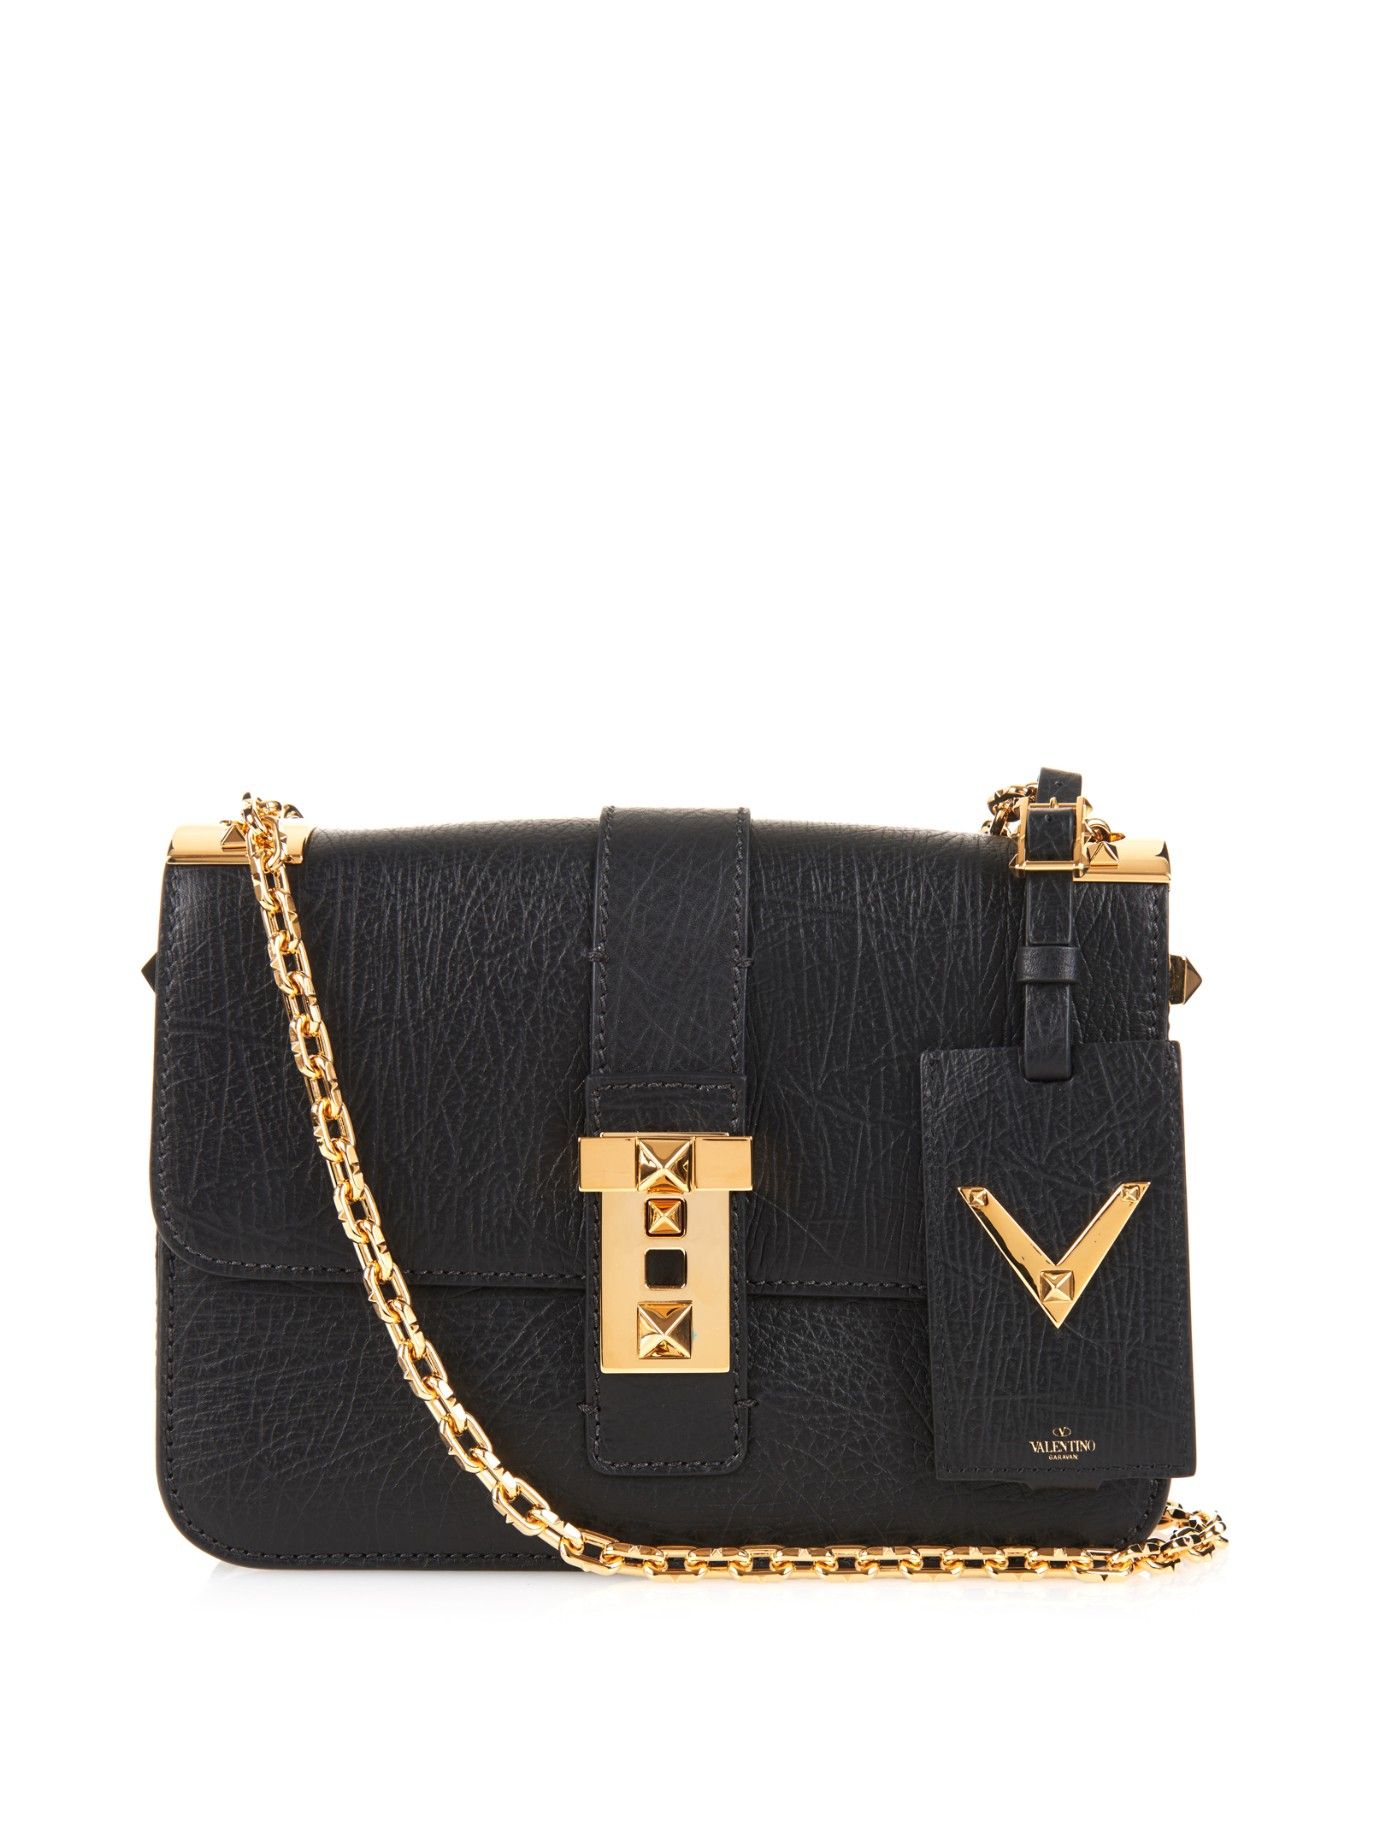 Lyst - Valentino B-rockstud Leather Shoulder Bag in Black